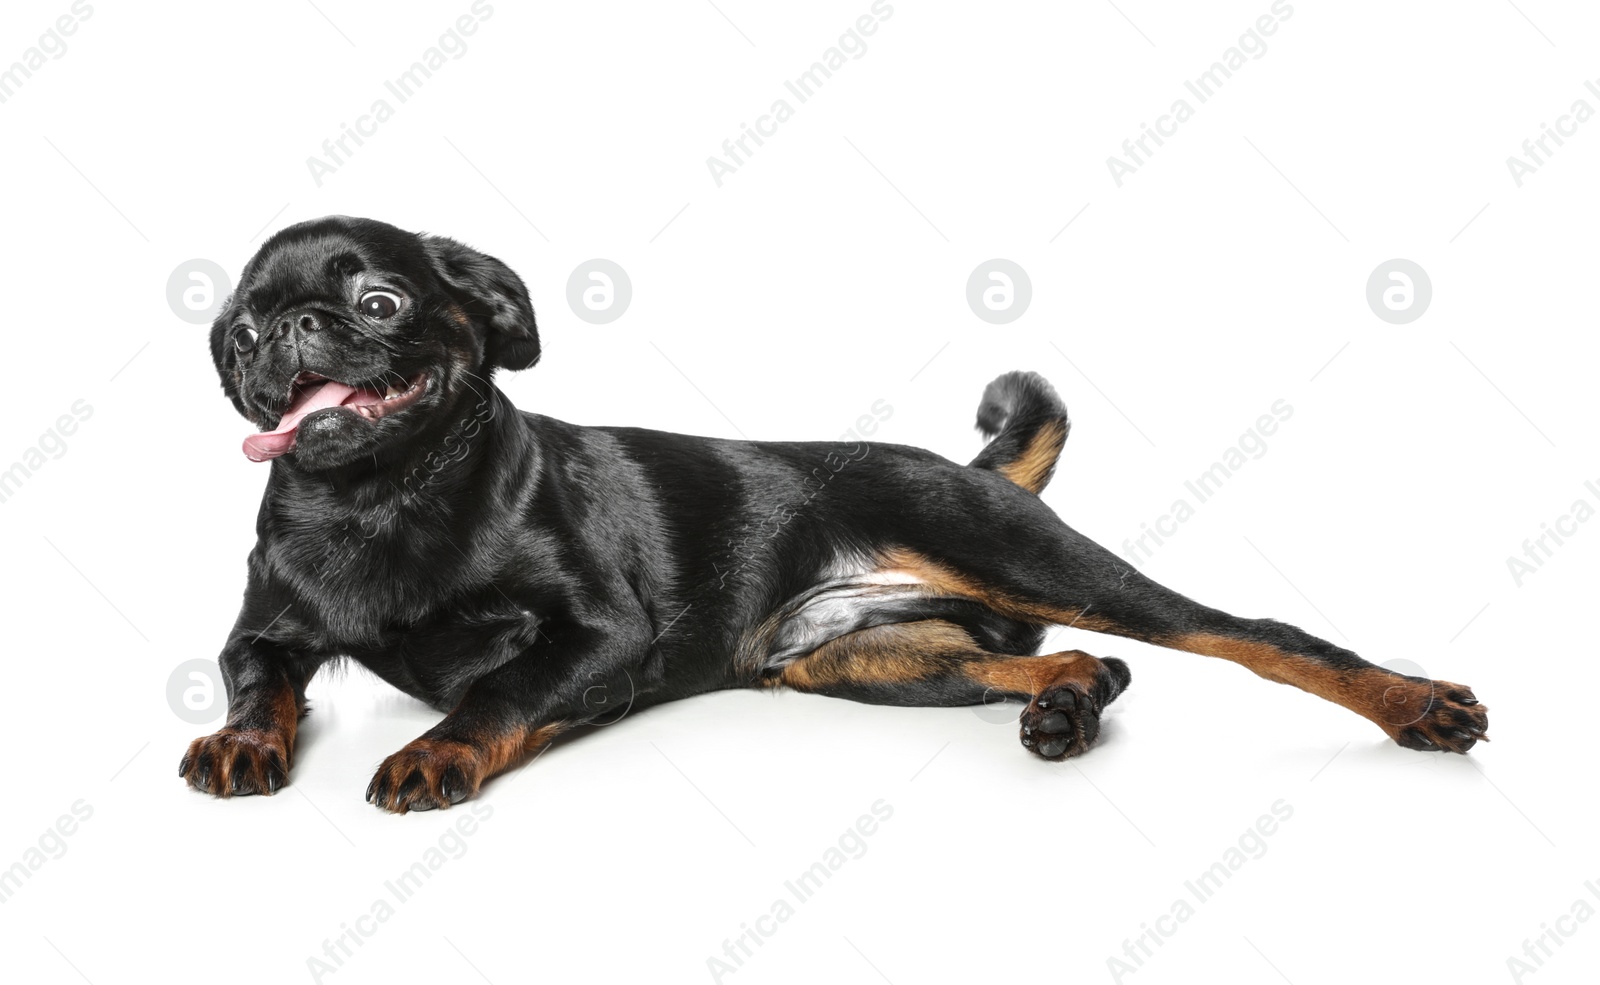 Photo of Adorable black Petit Brabancon dog lying on white background